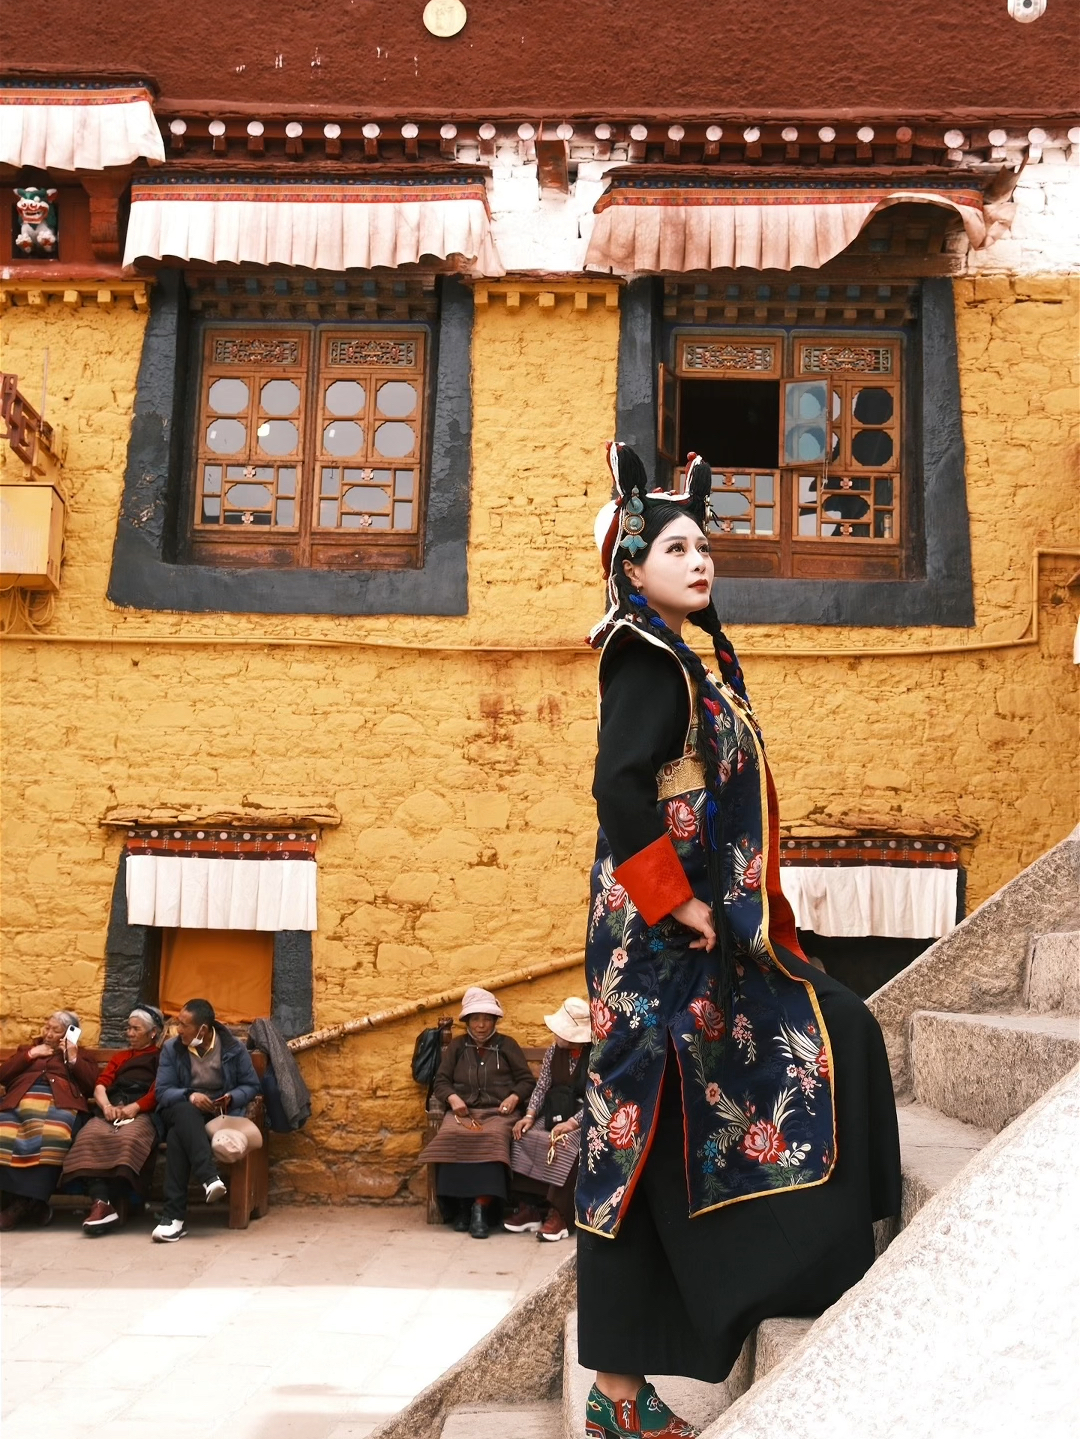 拉萨贵族服，传统的文化记忆，珍珠冠＋珊瑚巴珠头饰＋三联嘎乌盒的盛装女性，藏语称为“坚桑玛” 图五是我